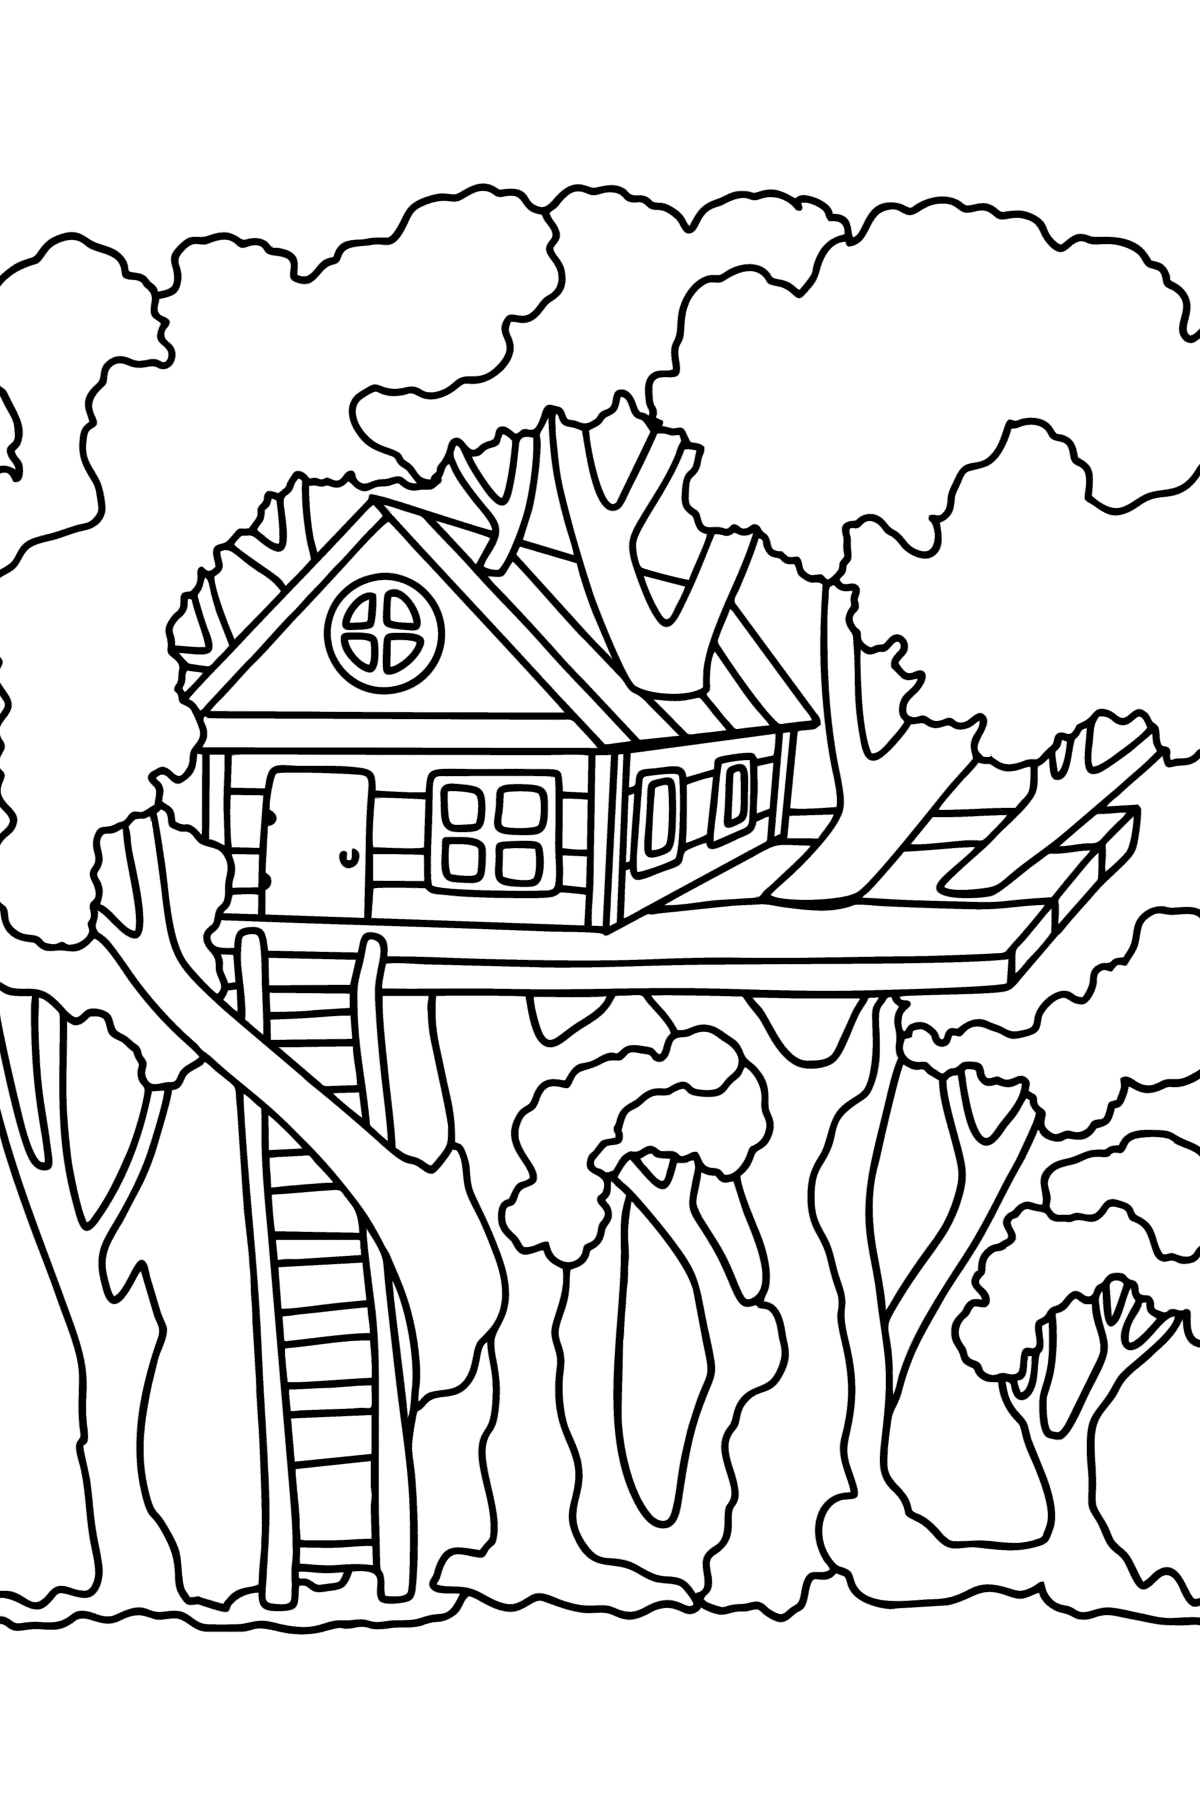 Kleurplaat huis aan een boom - kleurplaten voor kinderen